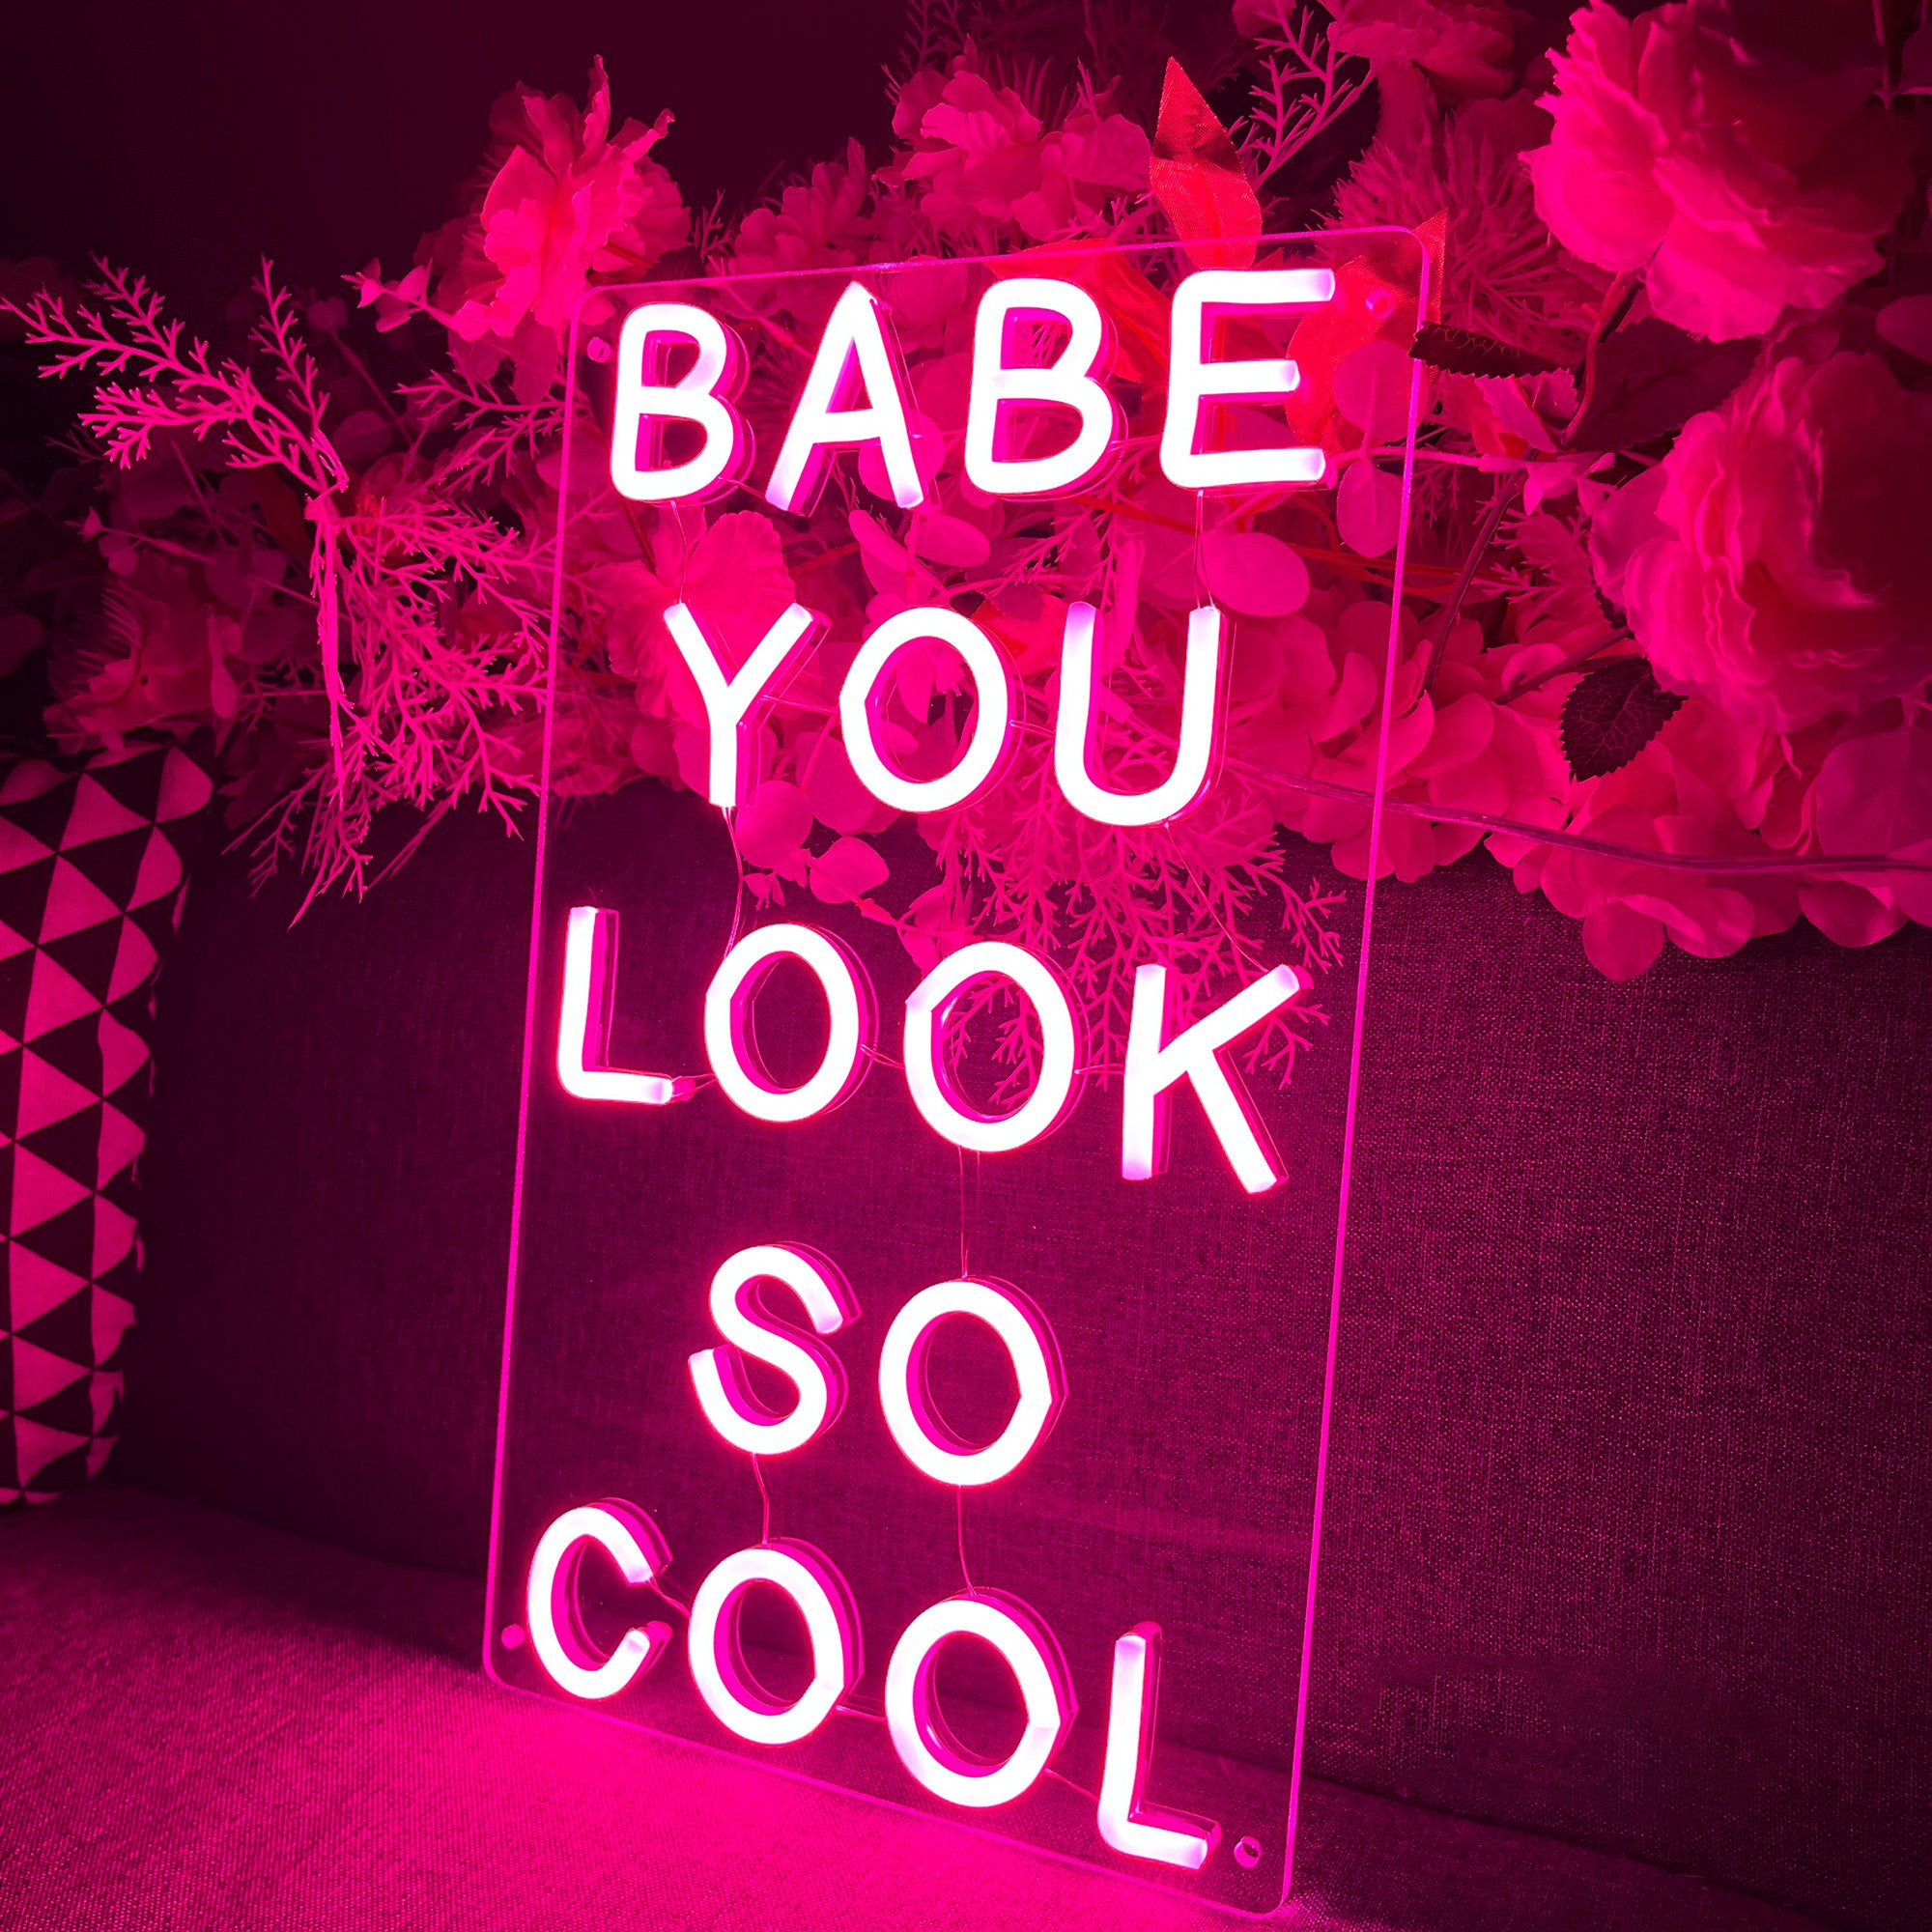 NEONIP-100% fatto a mano Babe You Look So Cool Insegna luminosa al neon a LED